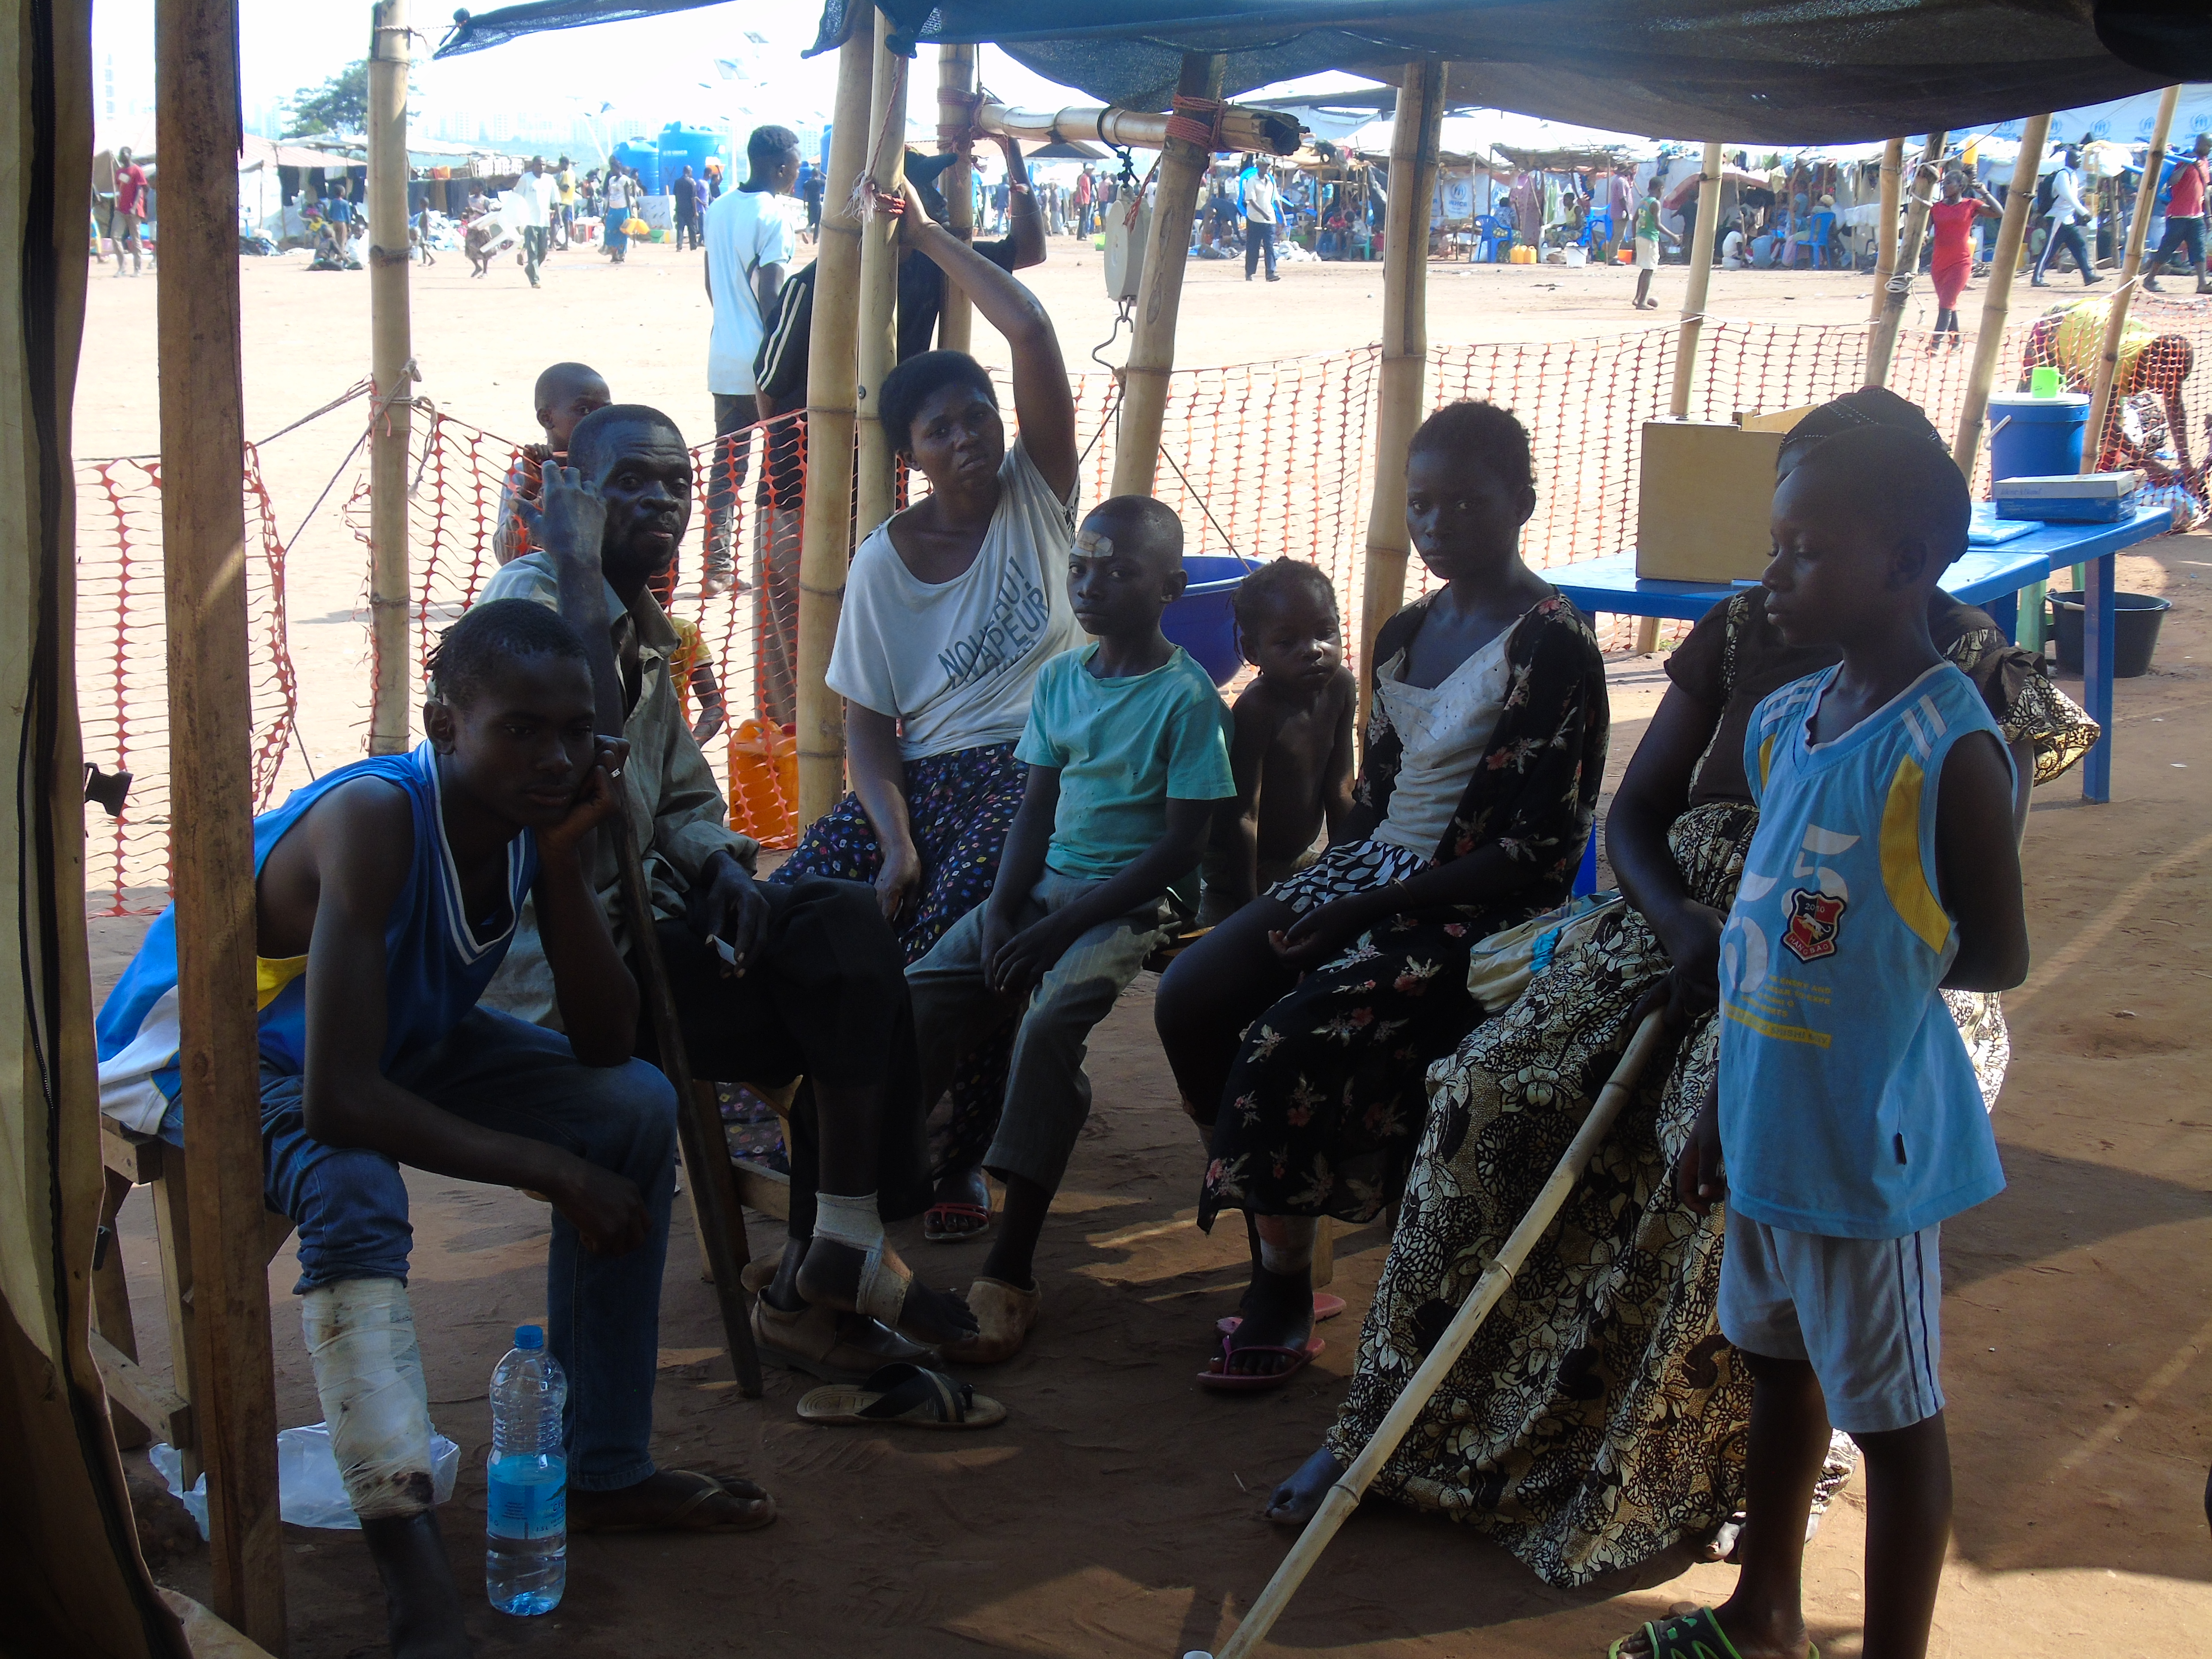 Situação dos refugiados na Lunda Norte Há um ano, na Província da Lunda Norte, houve um enorme fluxo migratório de pessoas vindas da República Democrática do Congo. Instalaram-se mais precisamente no município do Dundo, mais de 30 mil refugiados.